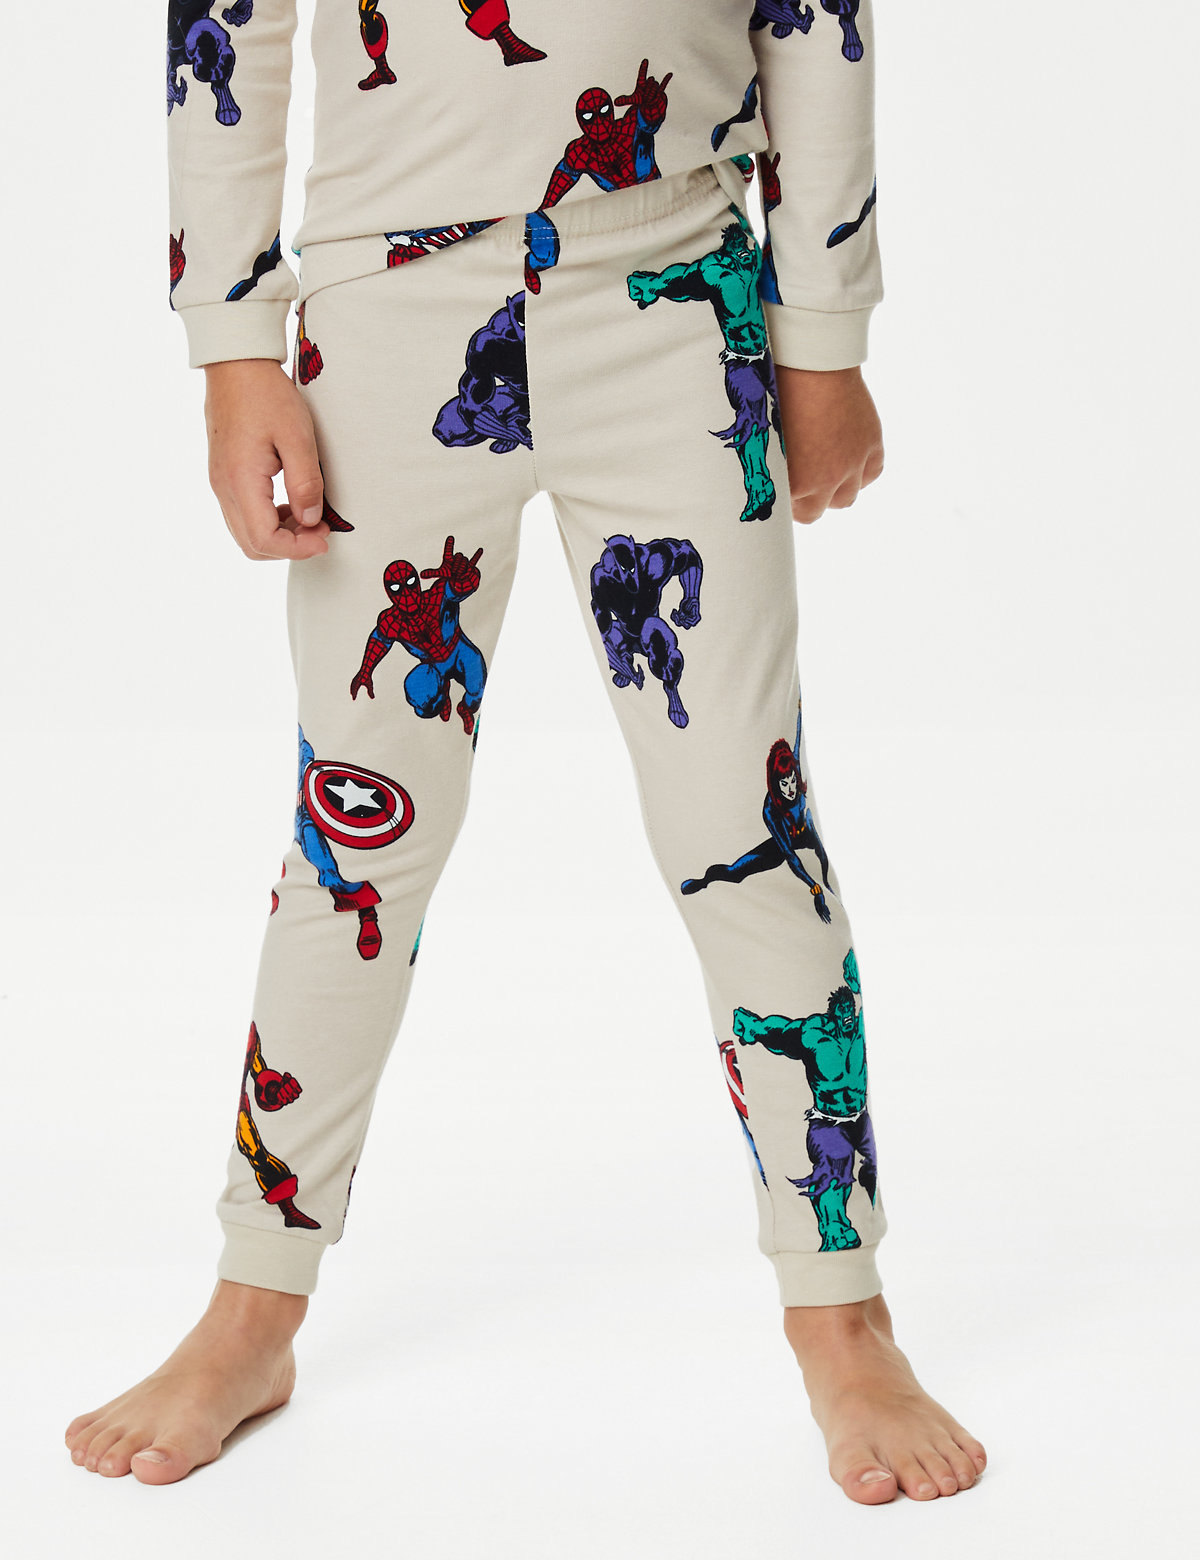 Marvel™ Pyjamas (3-12 Yrs)